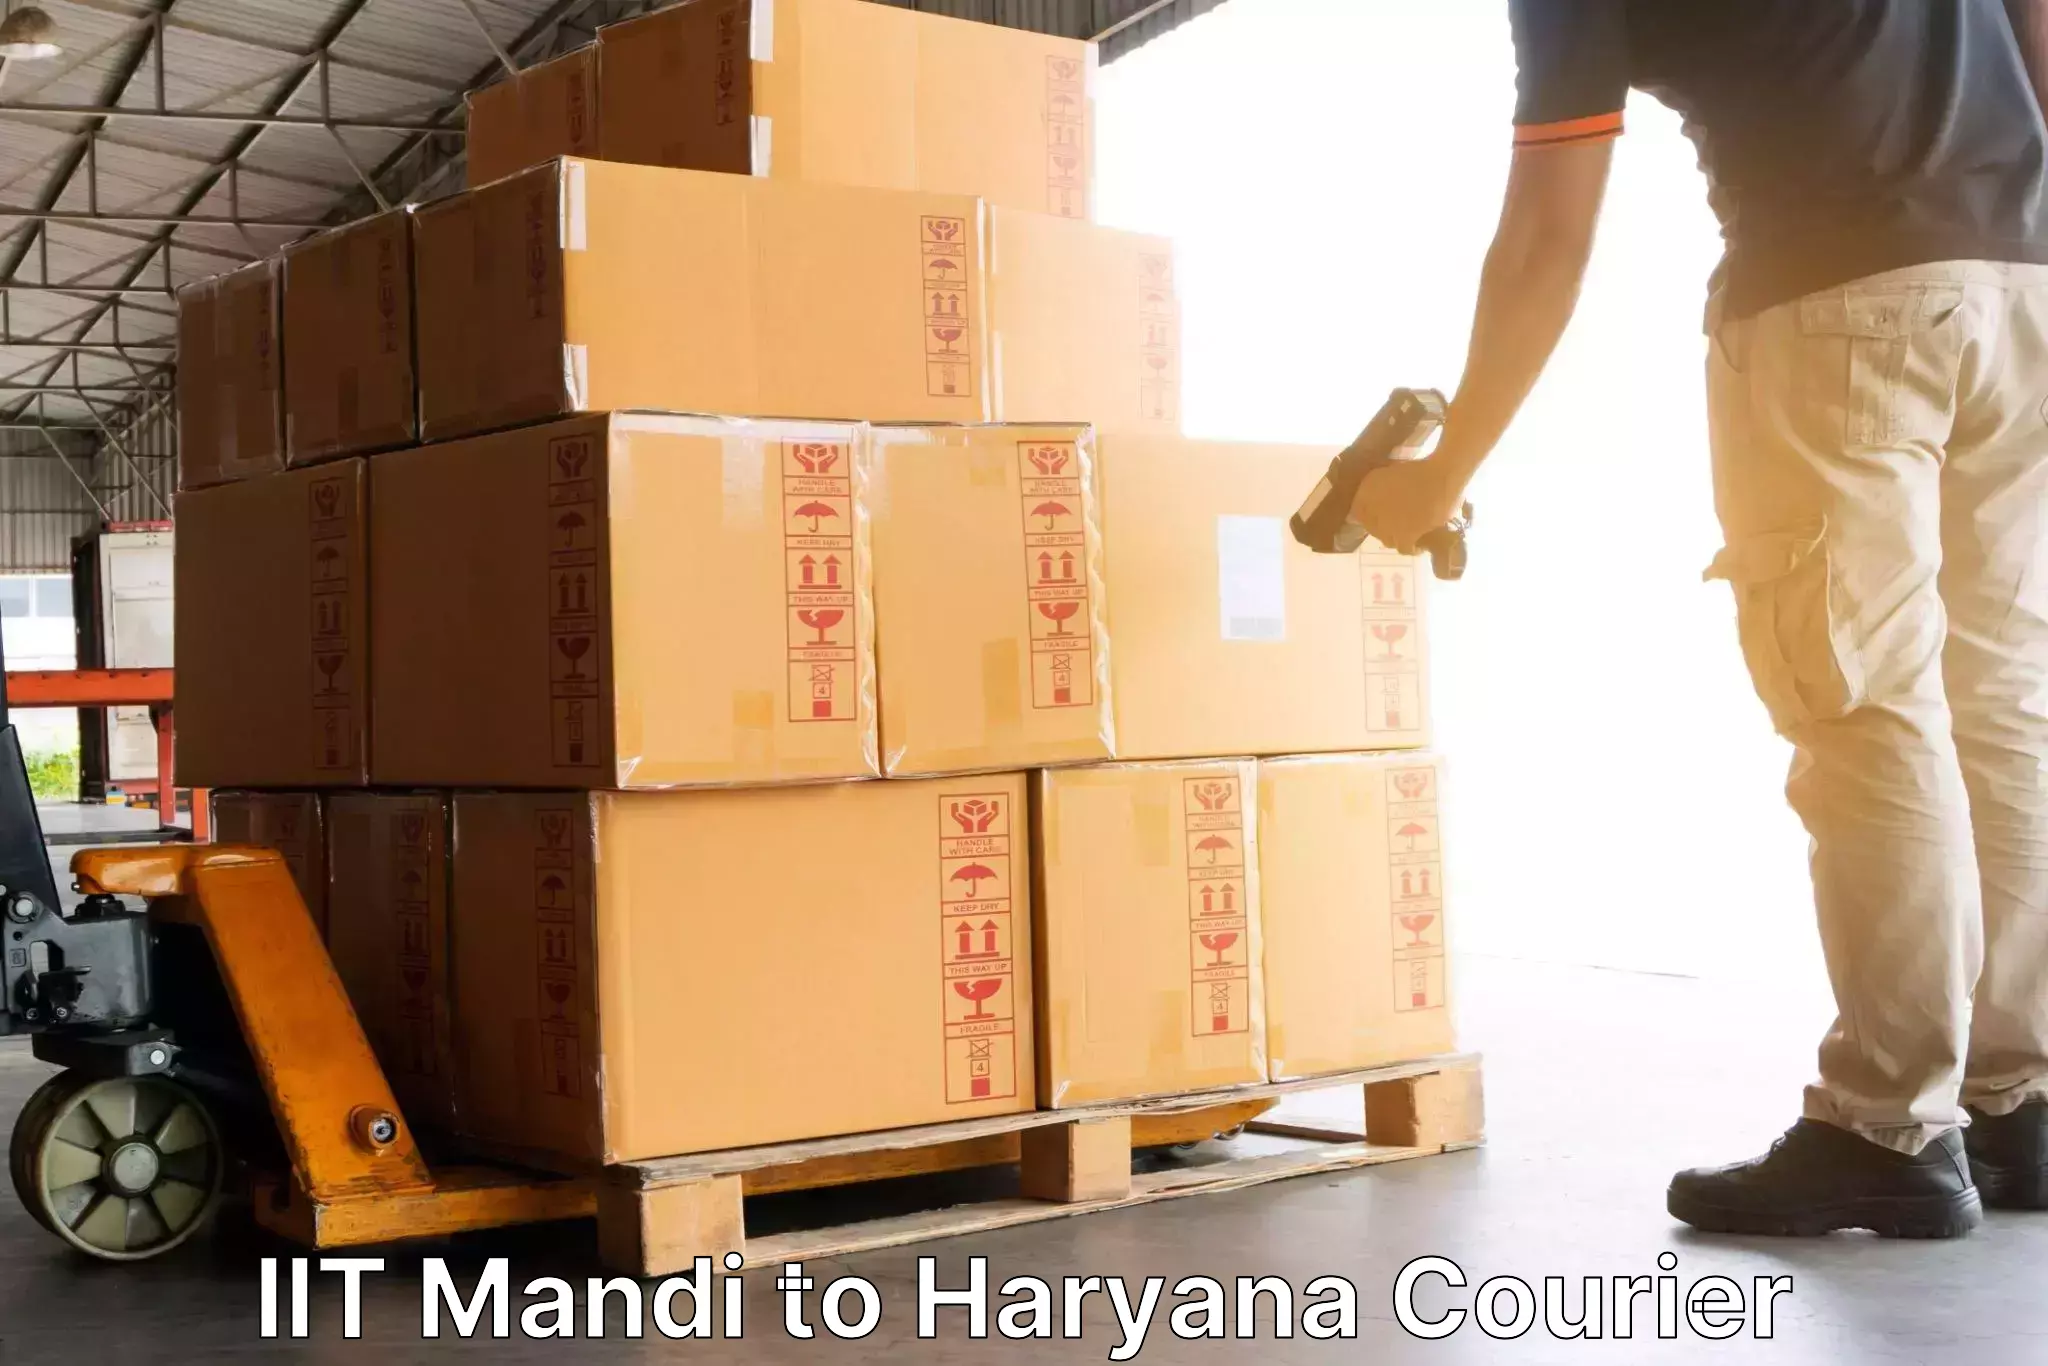 Business delivery service IIT Mandi to Yamuna Nagar